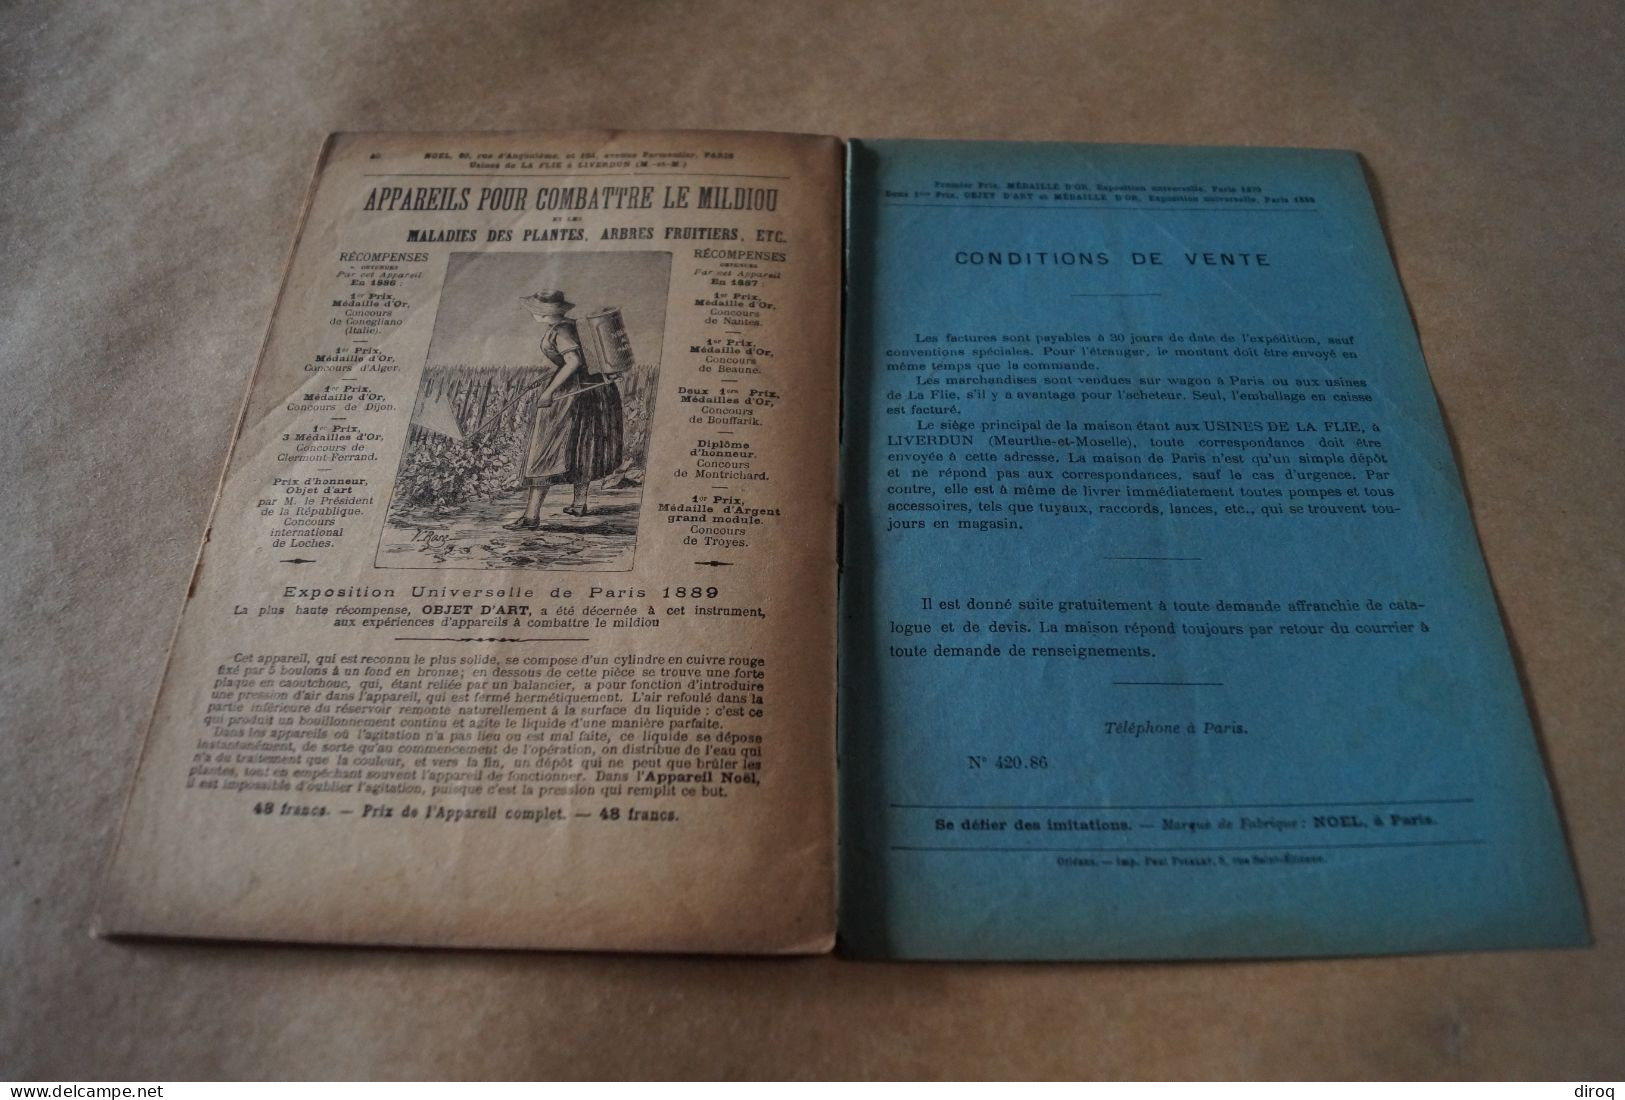 RARE,ancien catalogue fabrique de Pompes Noël 1899,complet 40 pages,23,5 Cm./15,5 Cm.